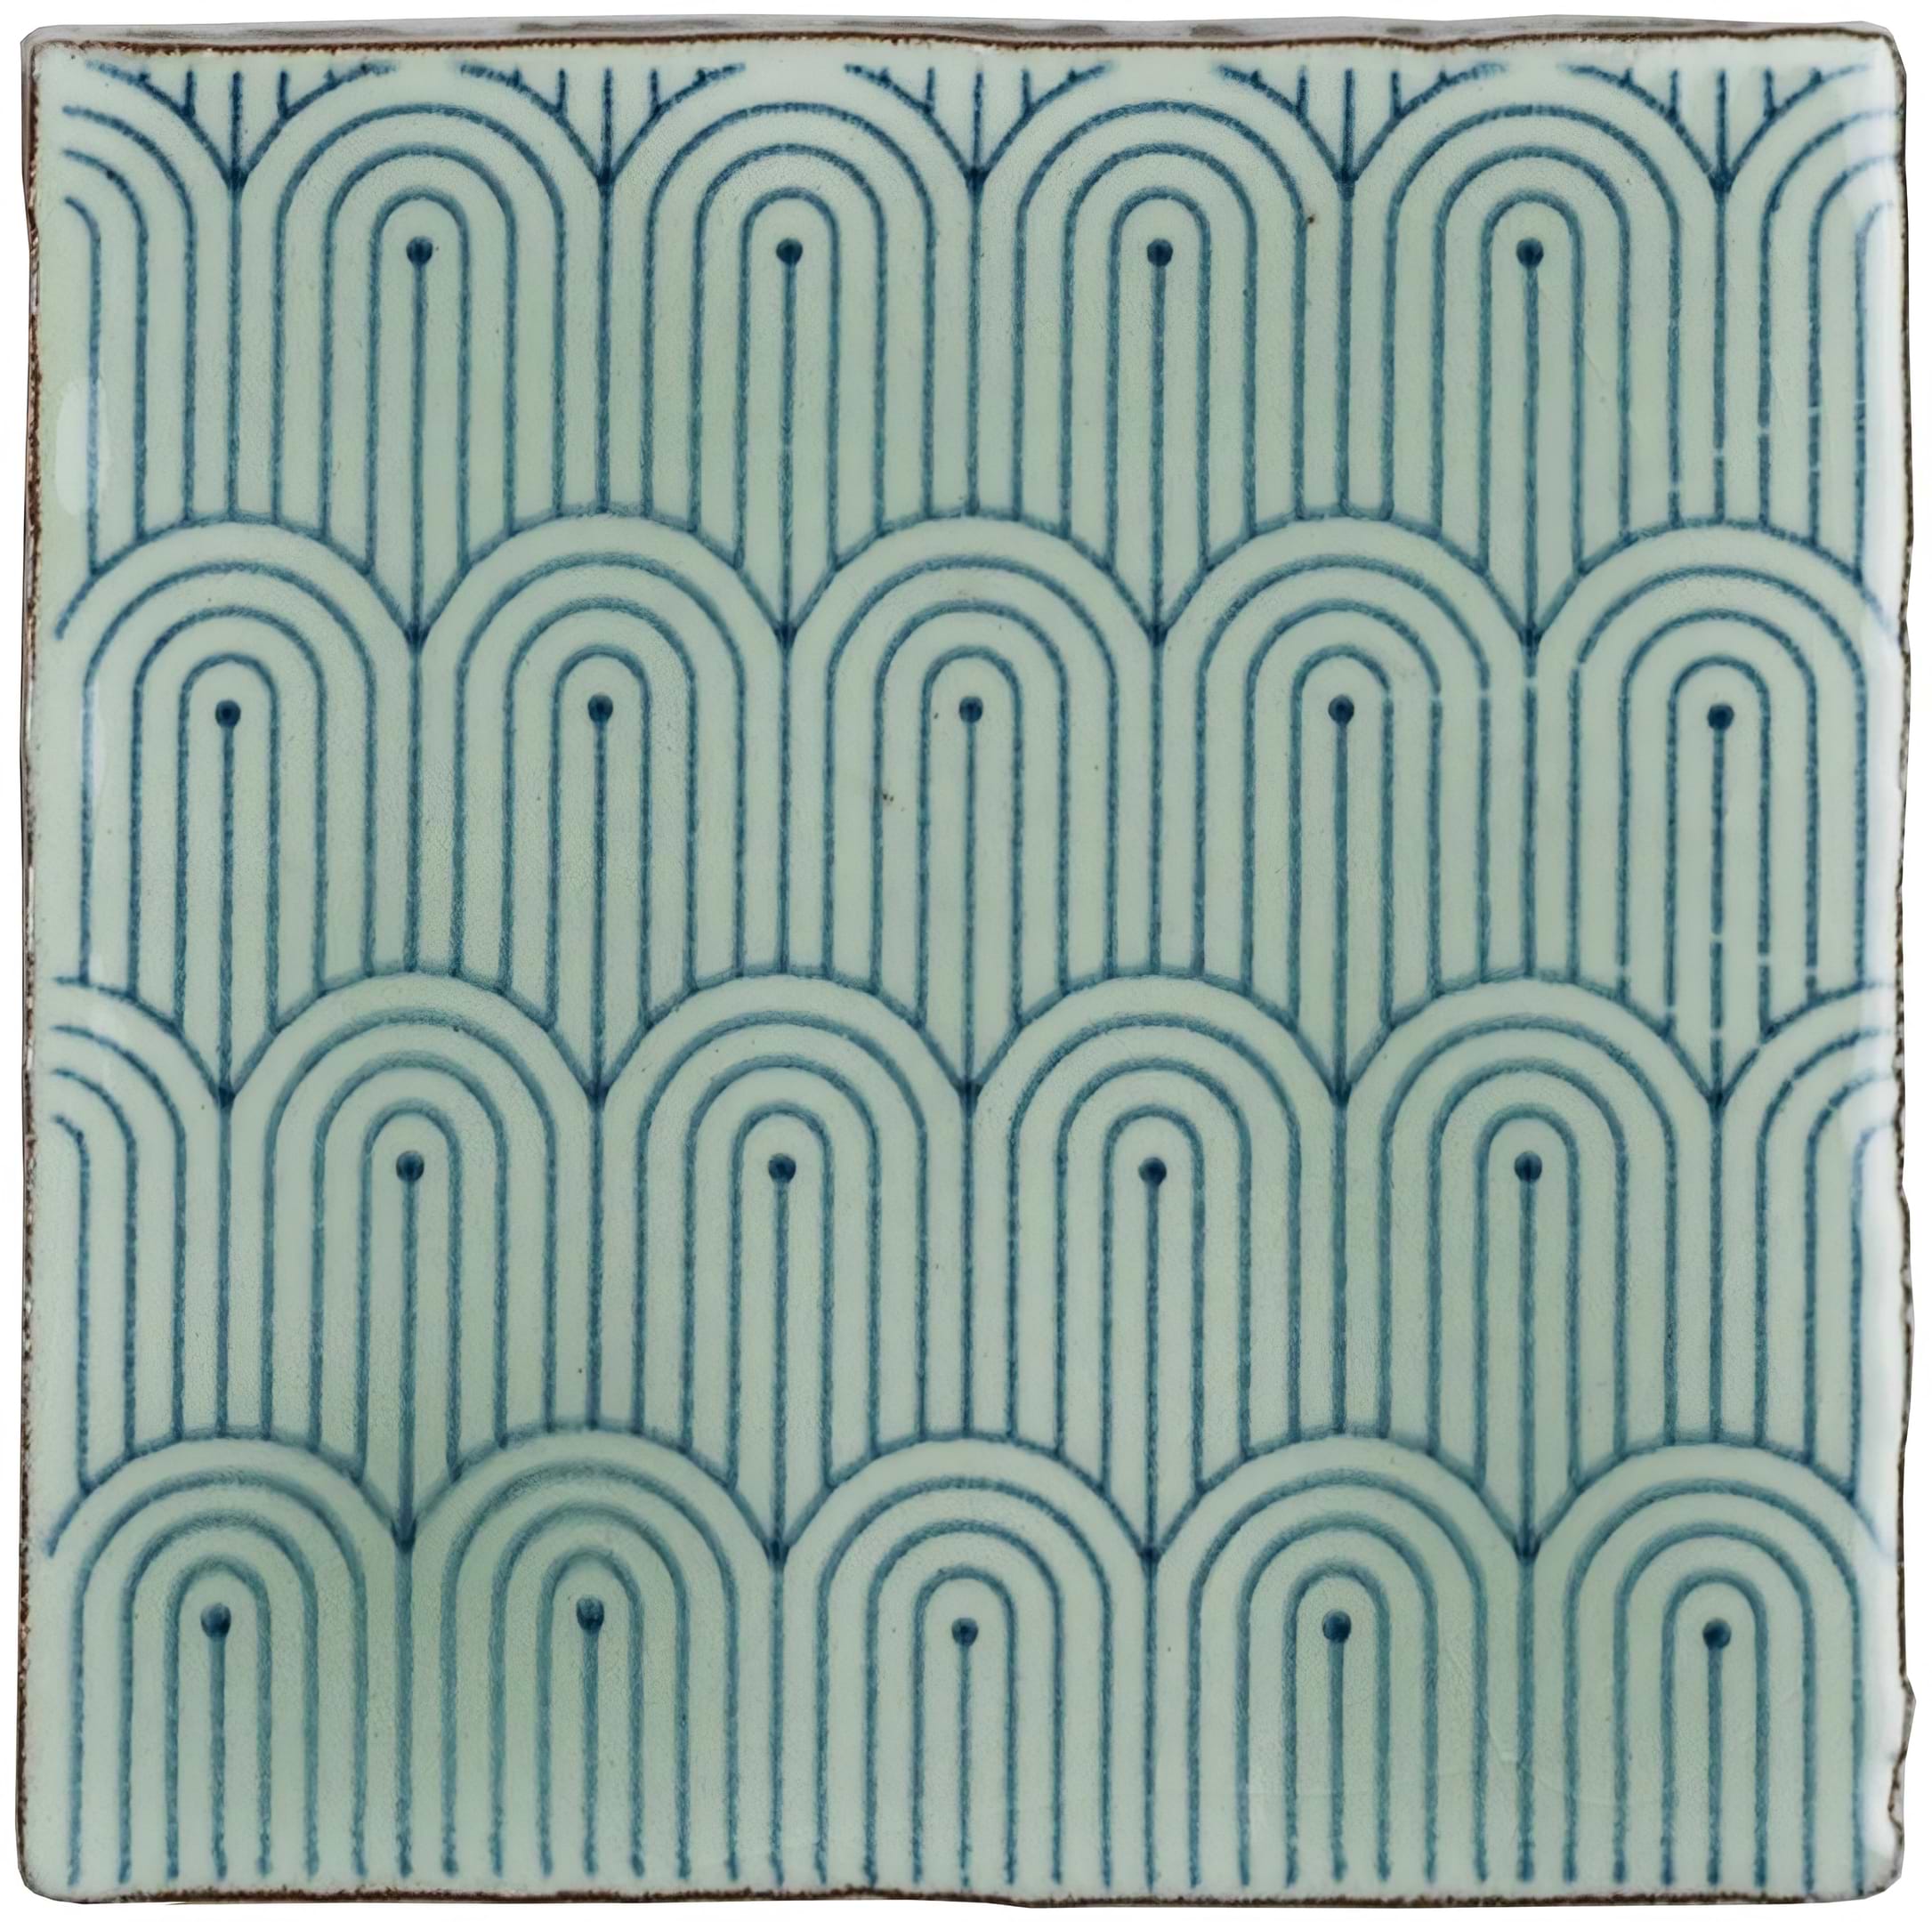 Manoir Deco Mint - Hyperion Tiles